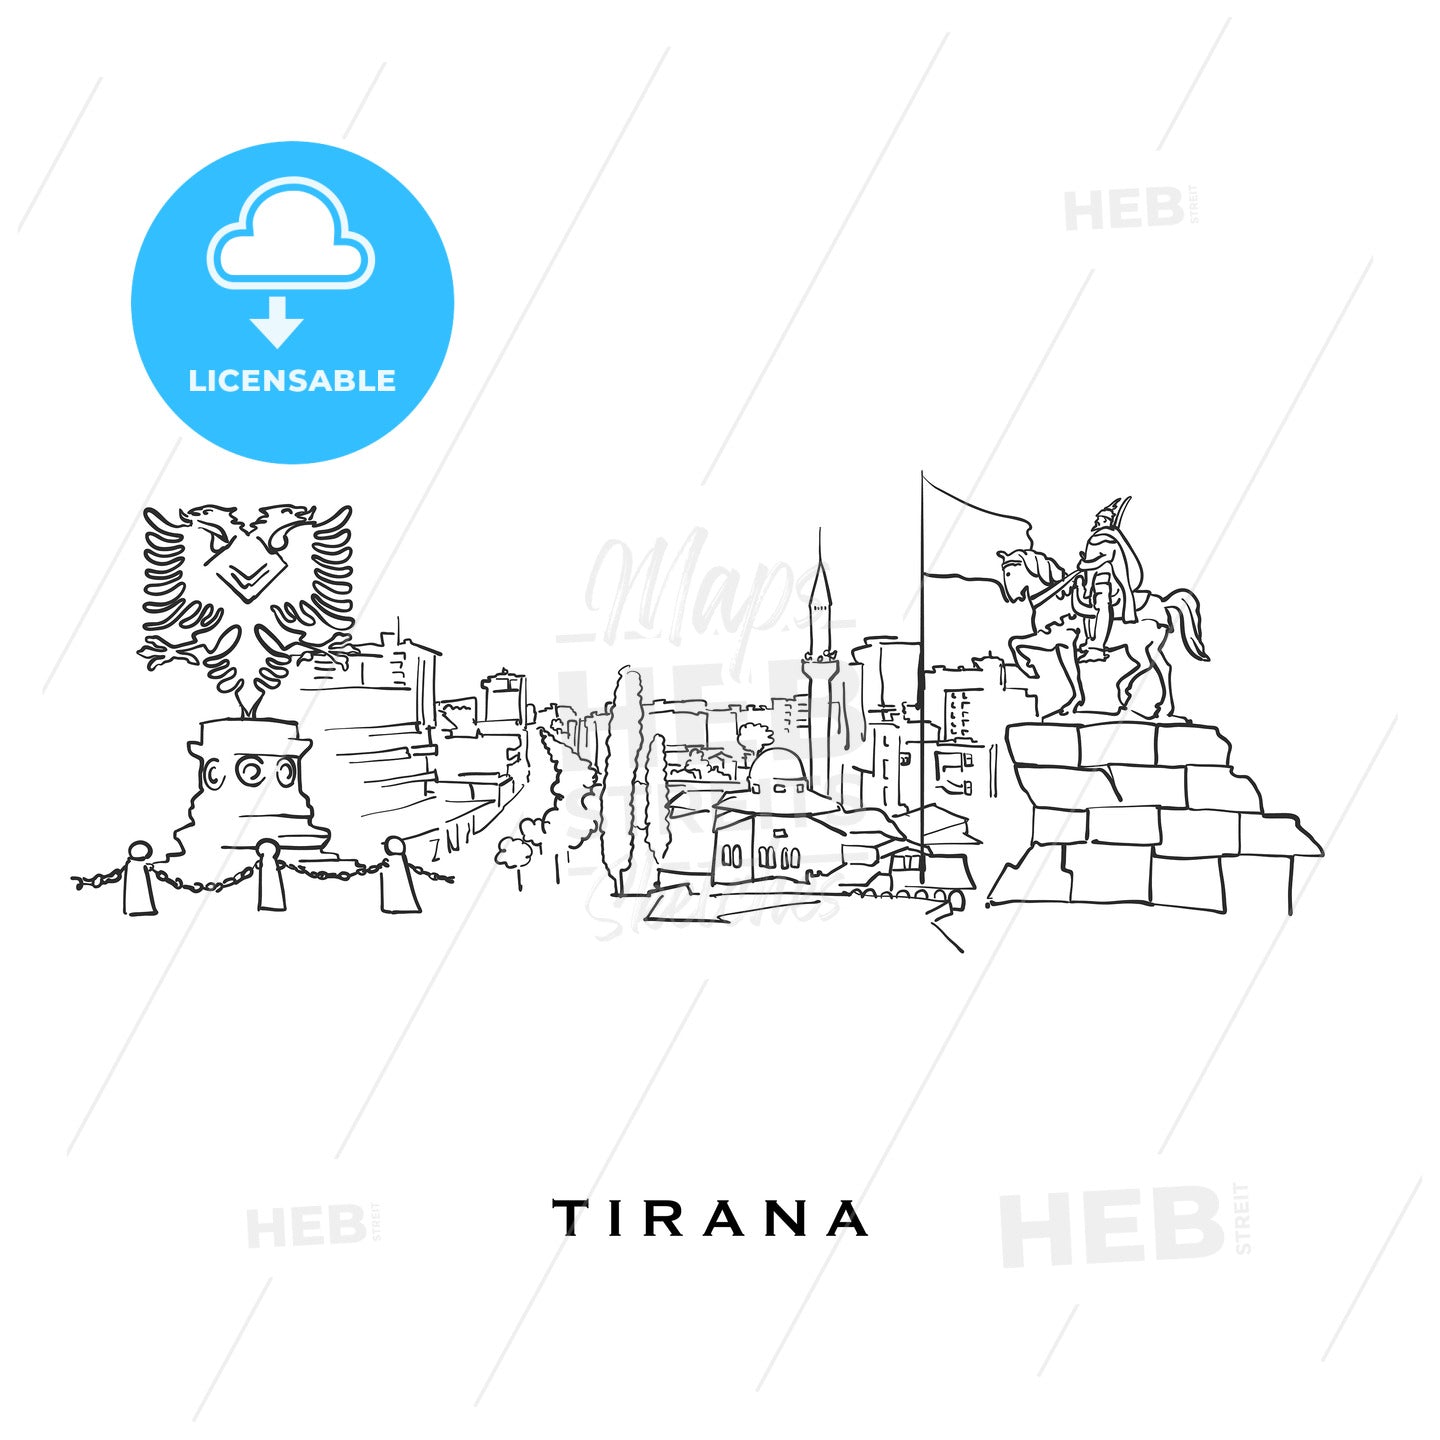 Tirana Albania famous architecture – instant download